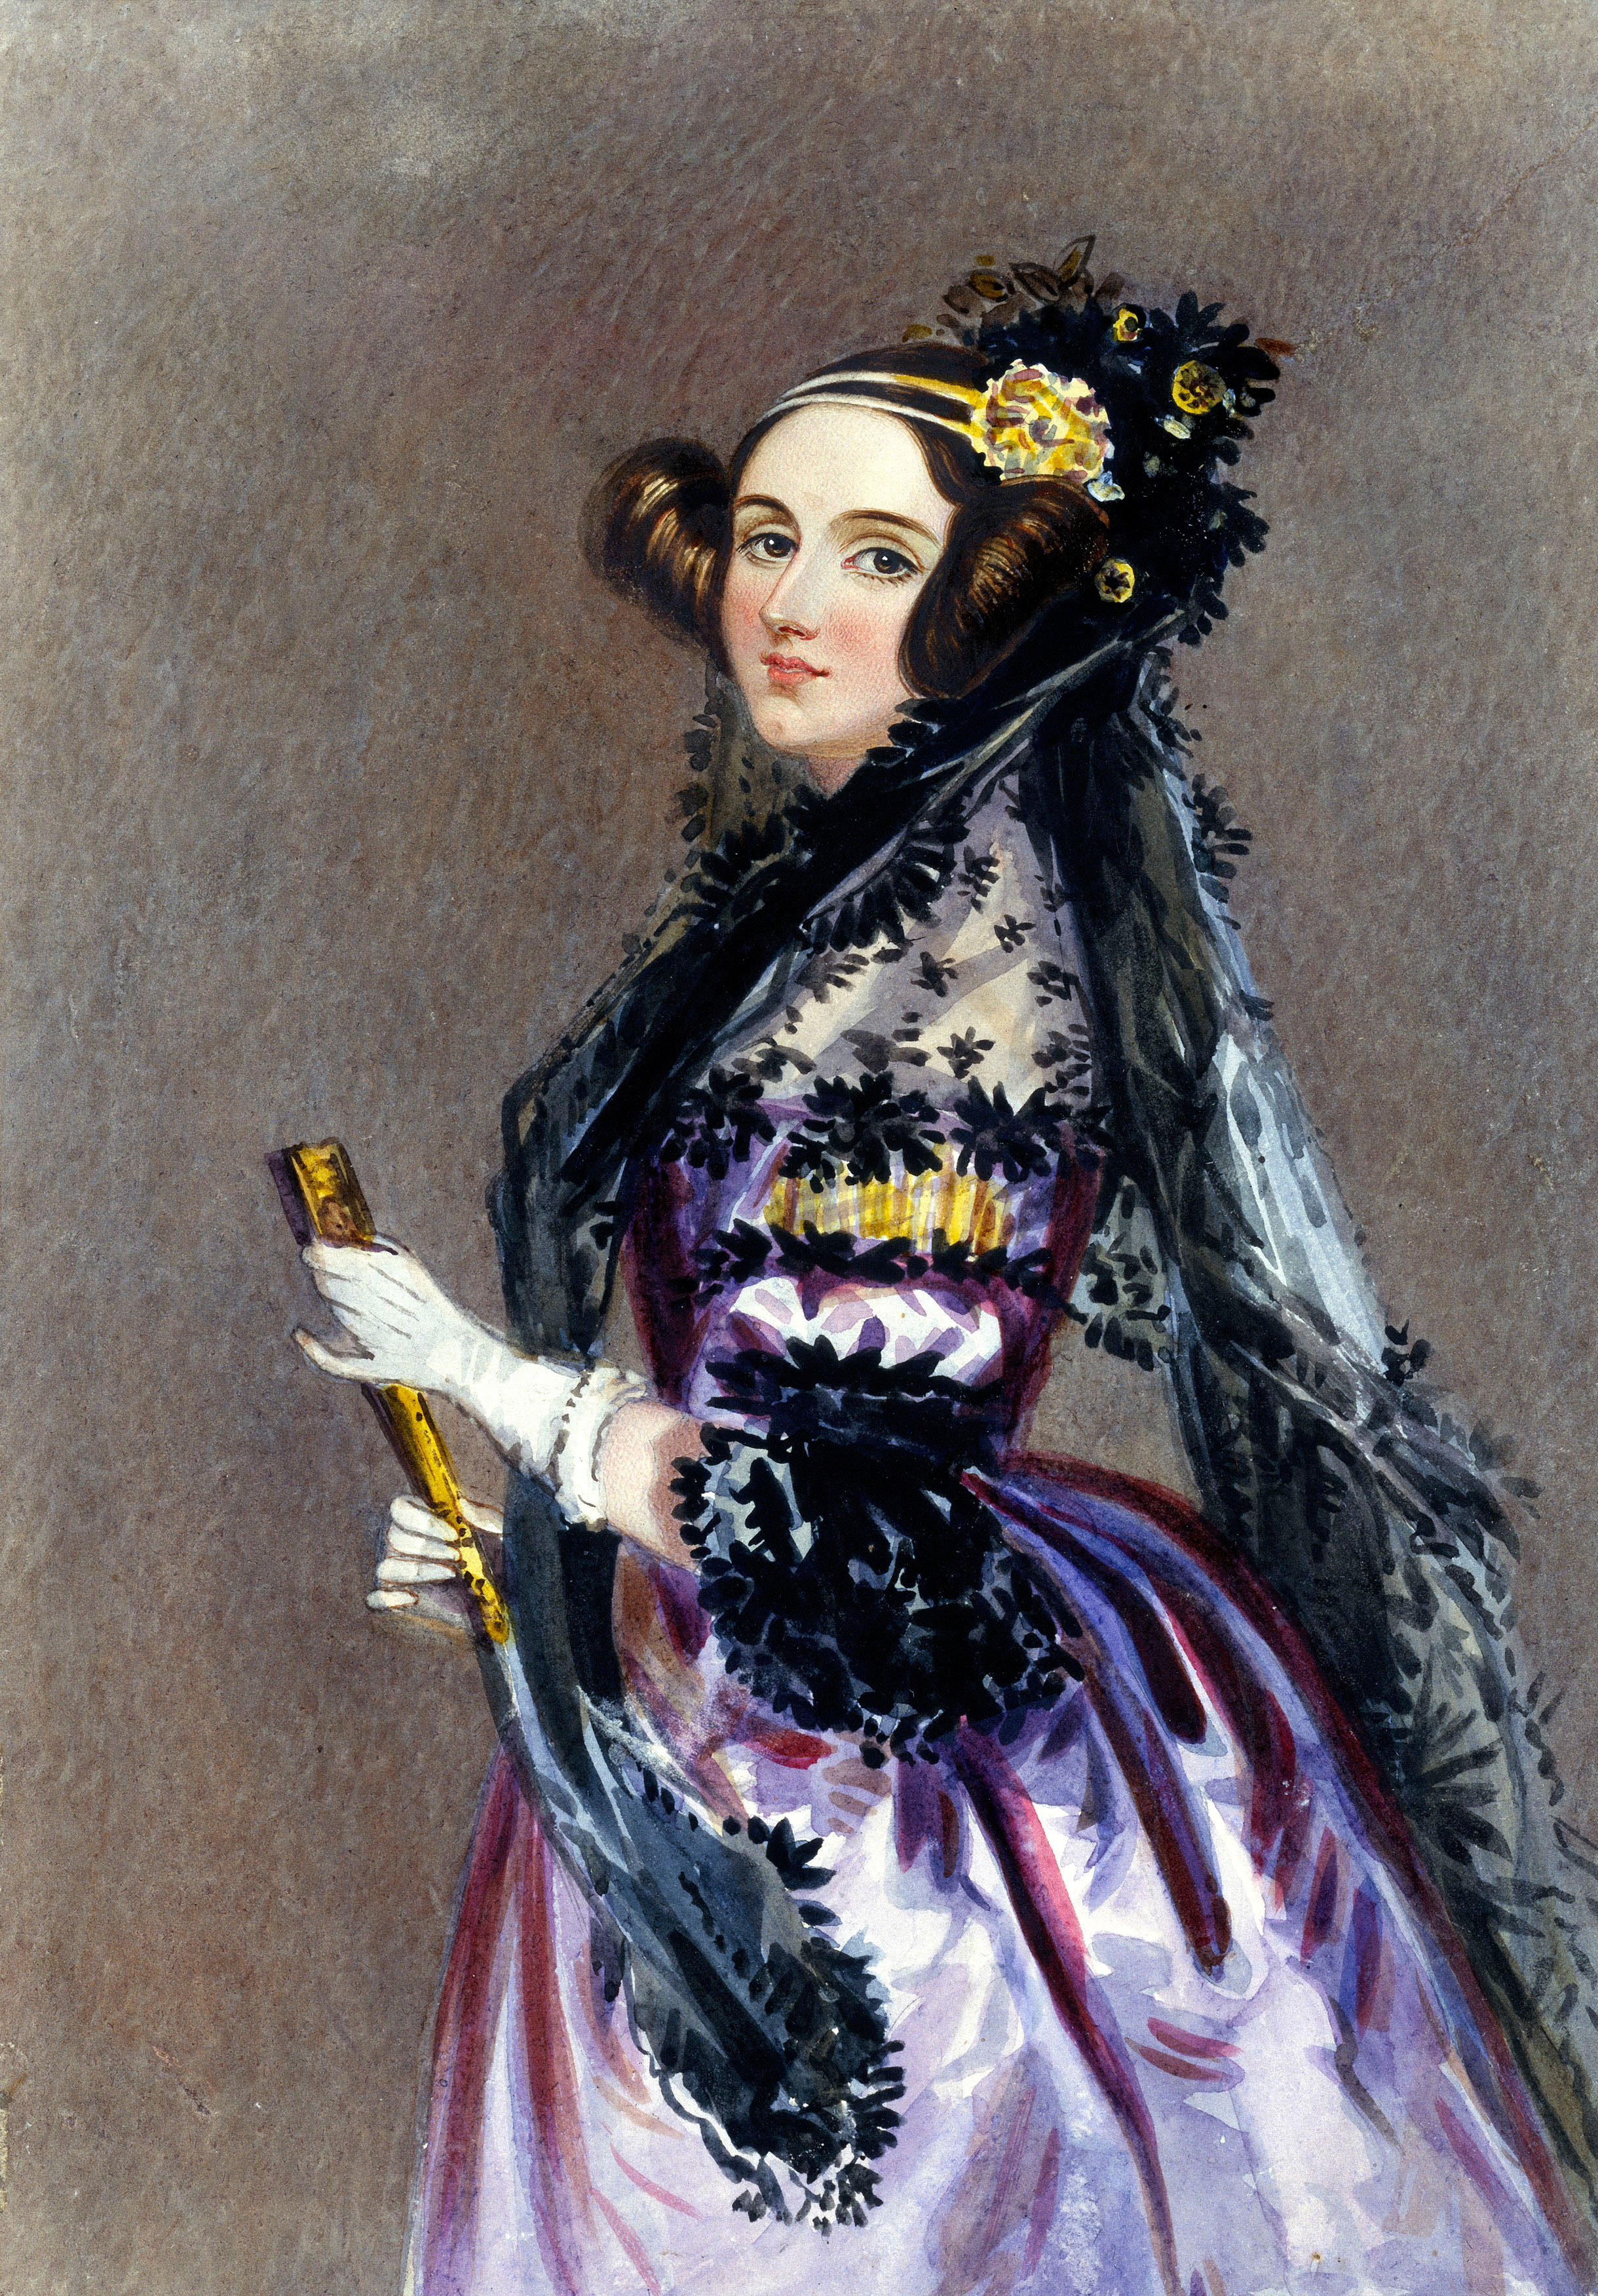 Ada Lovelace (1815.-1852.) je bila engleska matematičarka koja je surađivala s Charlesom Babbageom, i prva je shvatila da njihov analitički stroj ima mogućnost primjene i veće od samog računanja. Njezine „Bilješke“ smatraju se prvim zapisom kompjuterskog koda, a Ada se smatra prvom programerkom u povijesti. Charles Babbage zvao ju je „čarobnicom brojeva“.